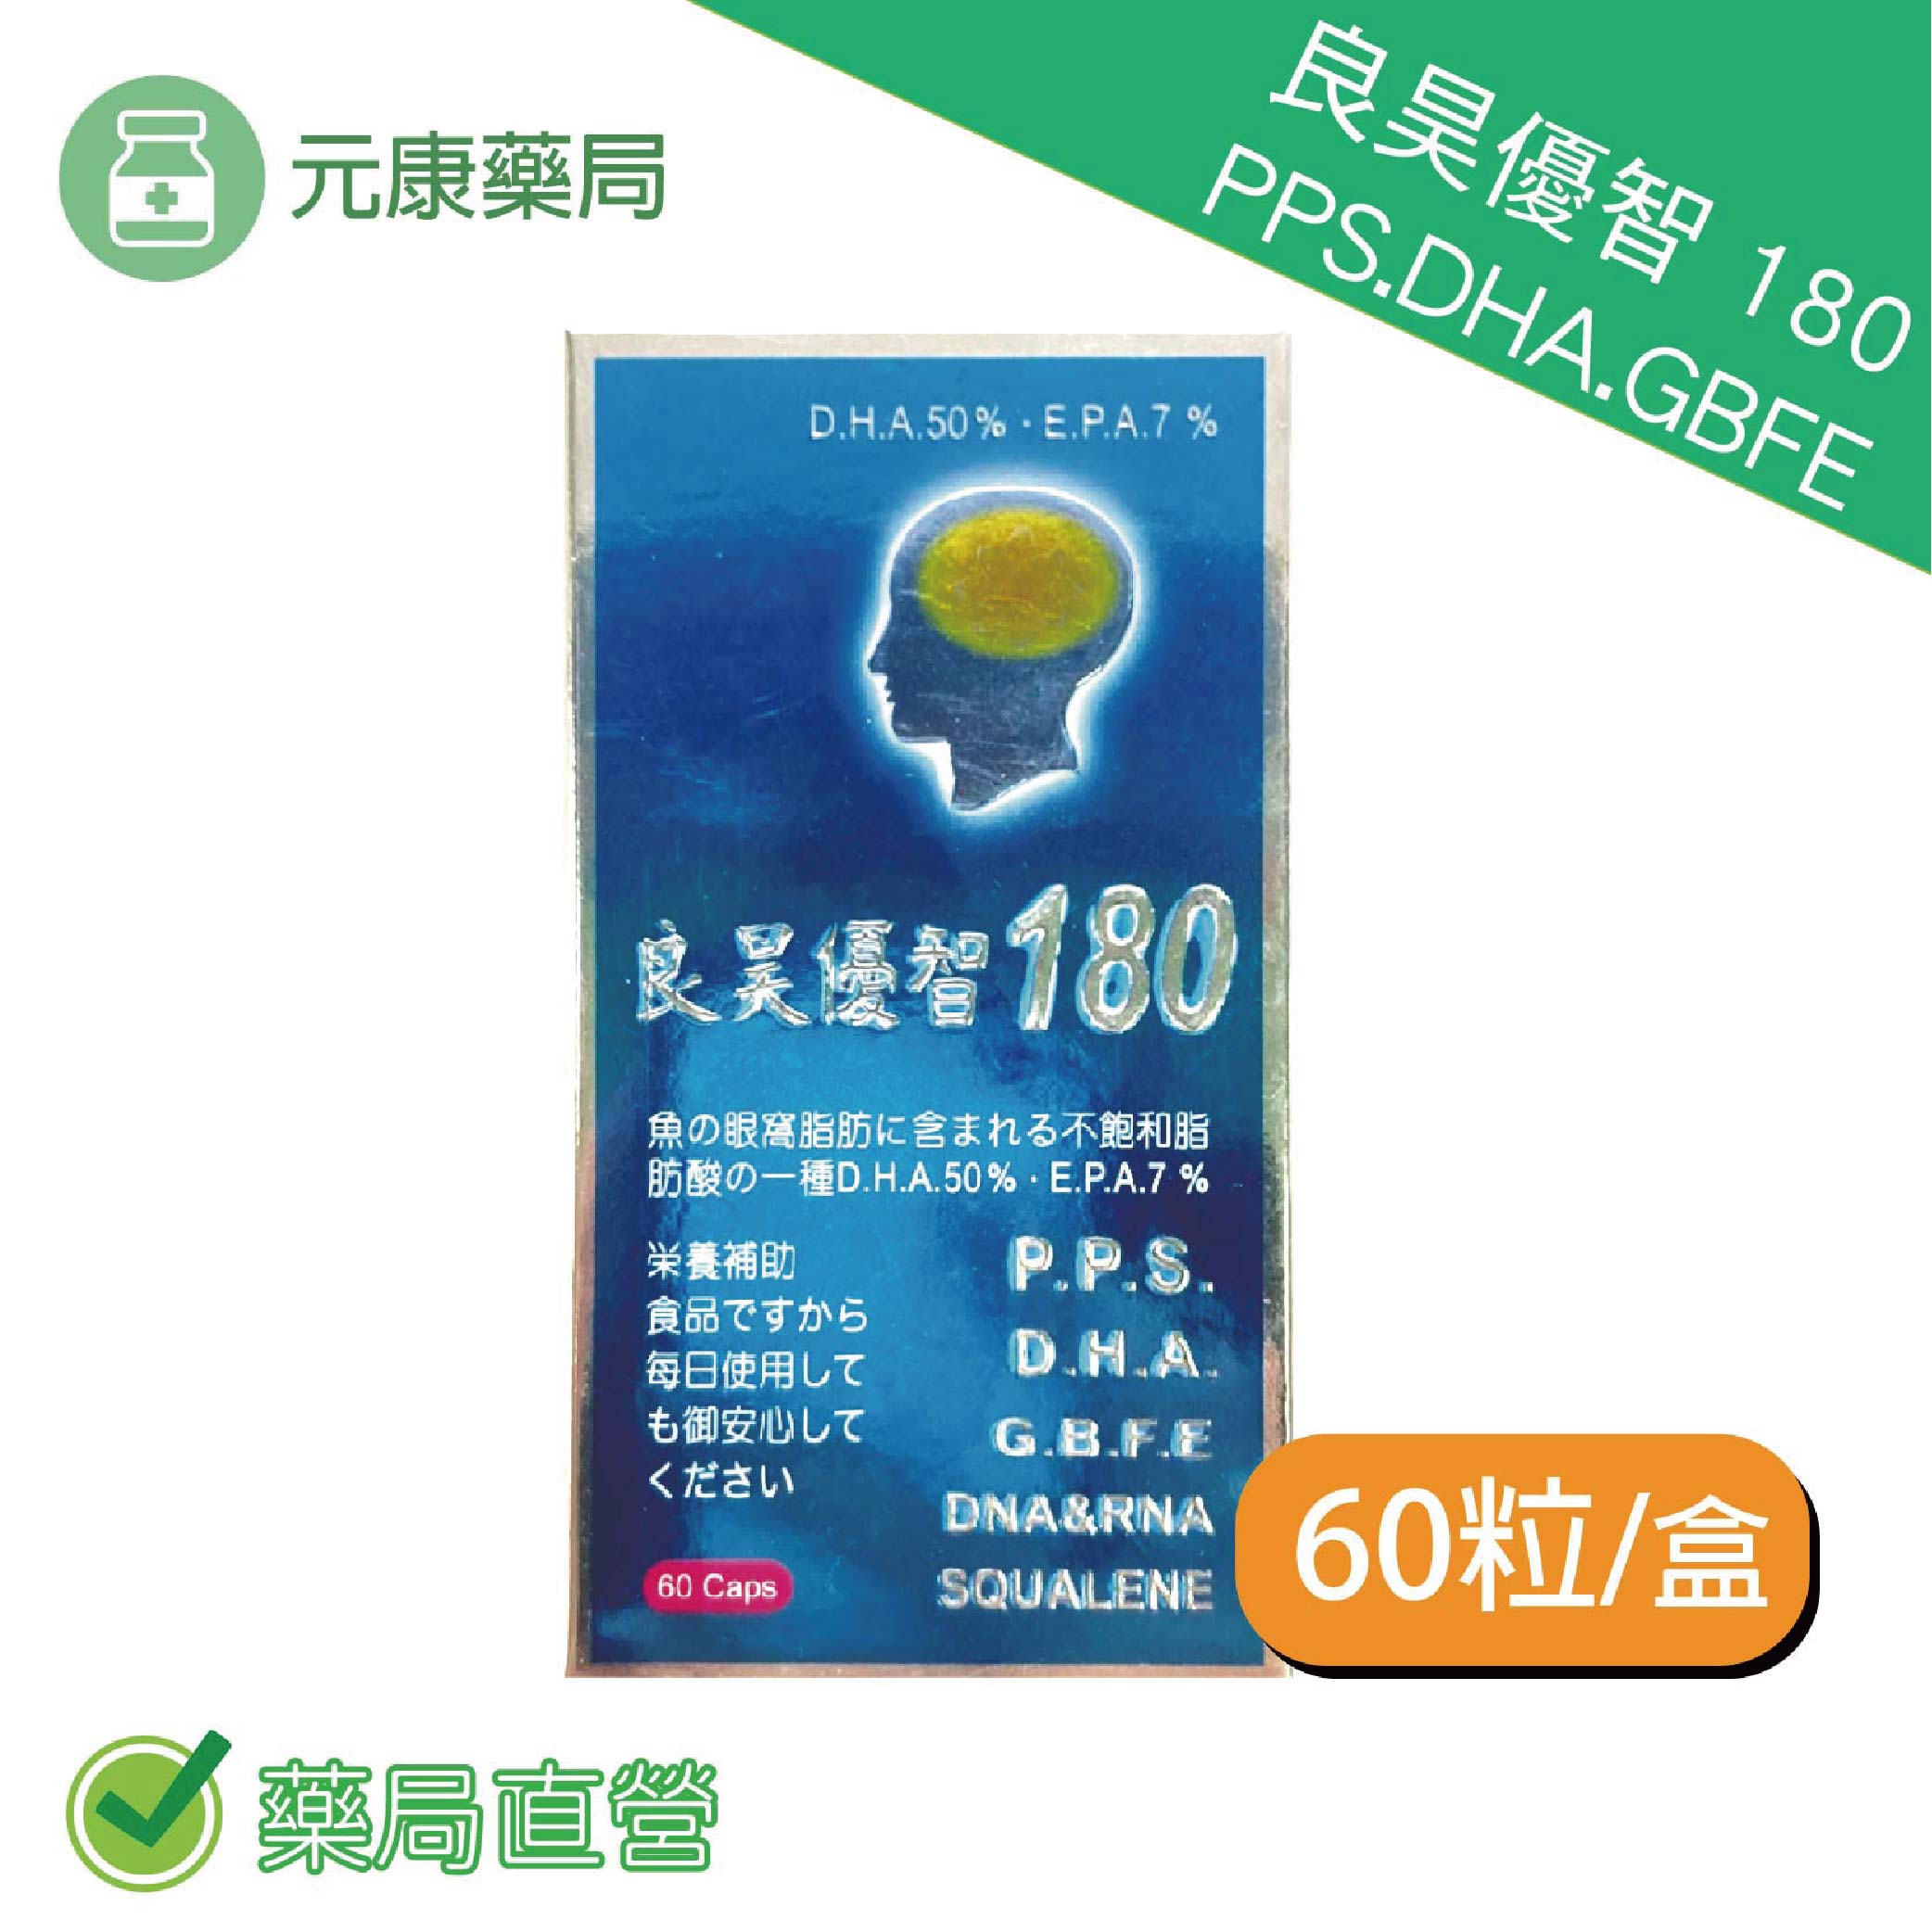 3瓶組 優智-180 PPS.DHA.GBFE(日本授權) 魚油 卵磷脂